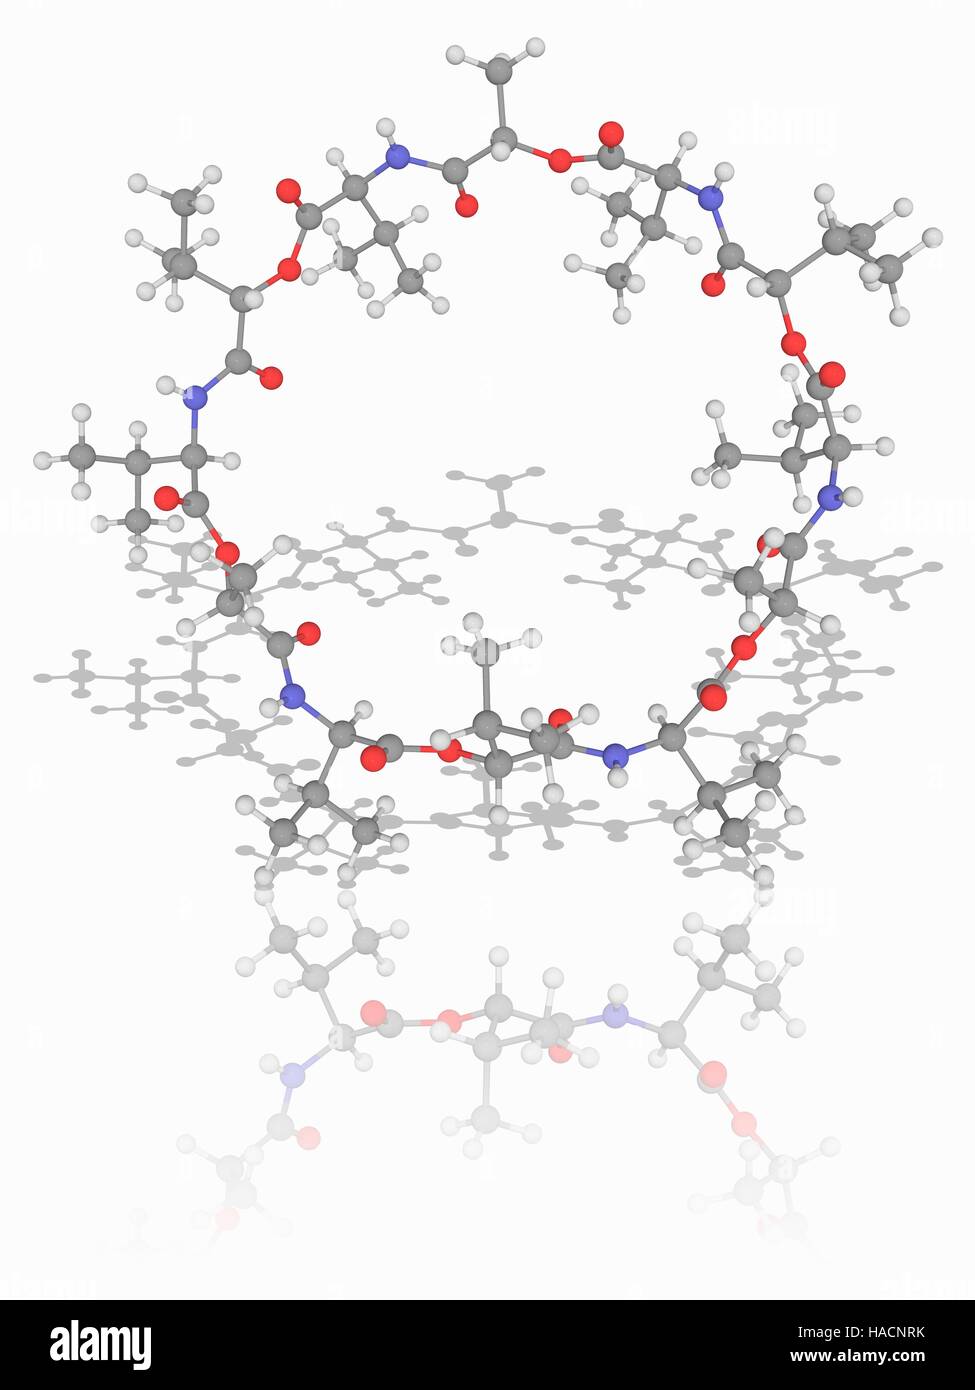 Valinomicina. Il modello molecolare del farmaco antibiotico valinomicina (C54.H90.N6.O18), una macromolecola dodecadepsipeptide ottenuto da diversi batteri Streptomyces. Gli atomi sono rappresentati da sfere e sono codificati a colori: carbonio (grigio), Idrogeno (bianco), Azoto (blu) e ossigeno (rosso). Illustrazione. Foto Stock